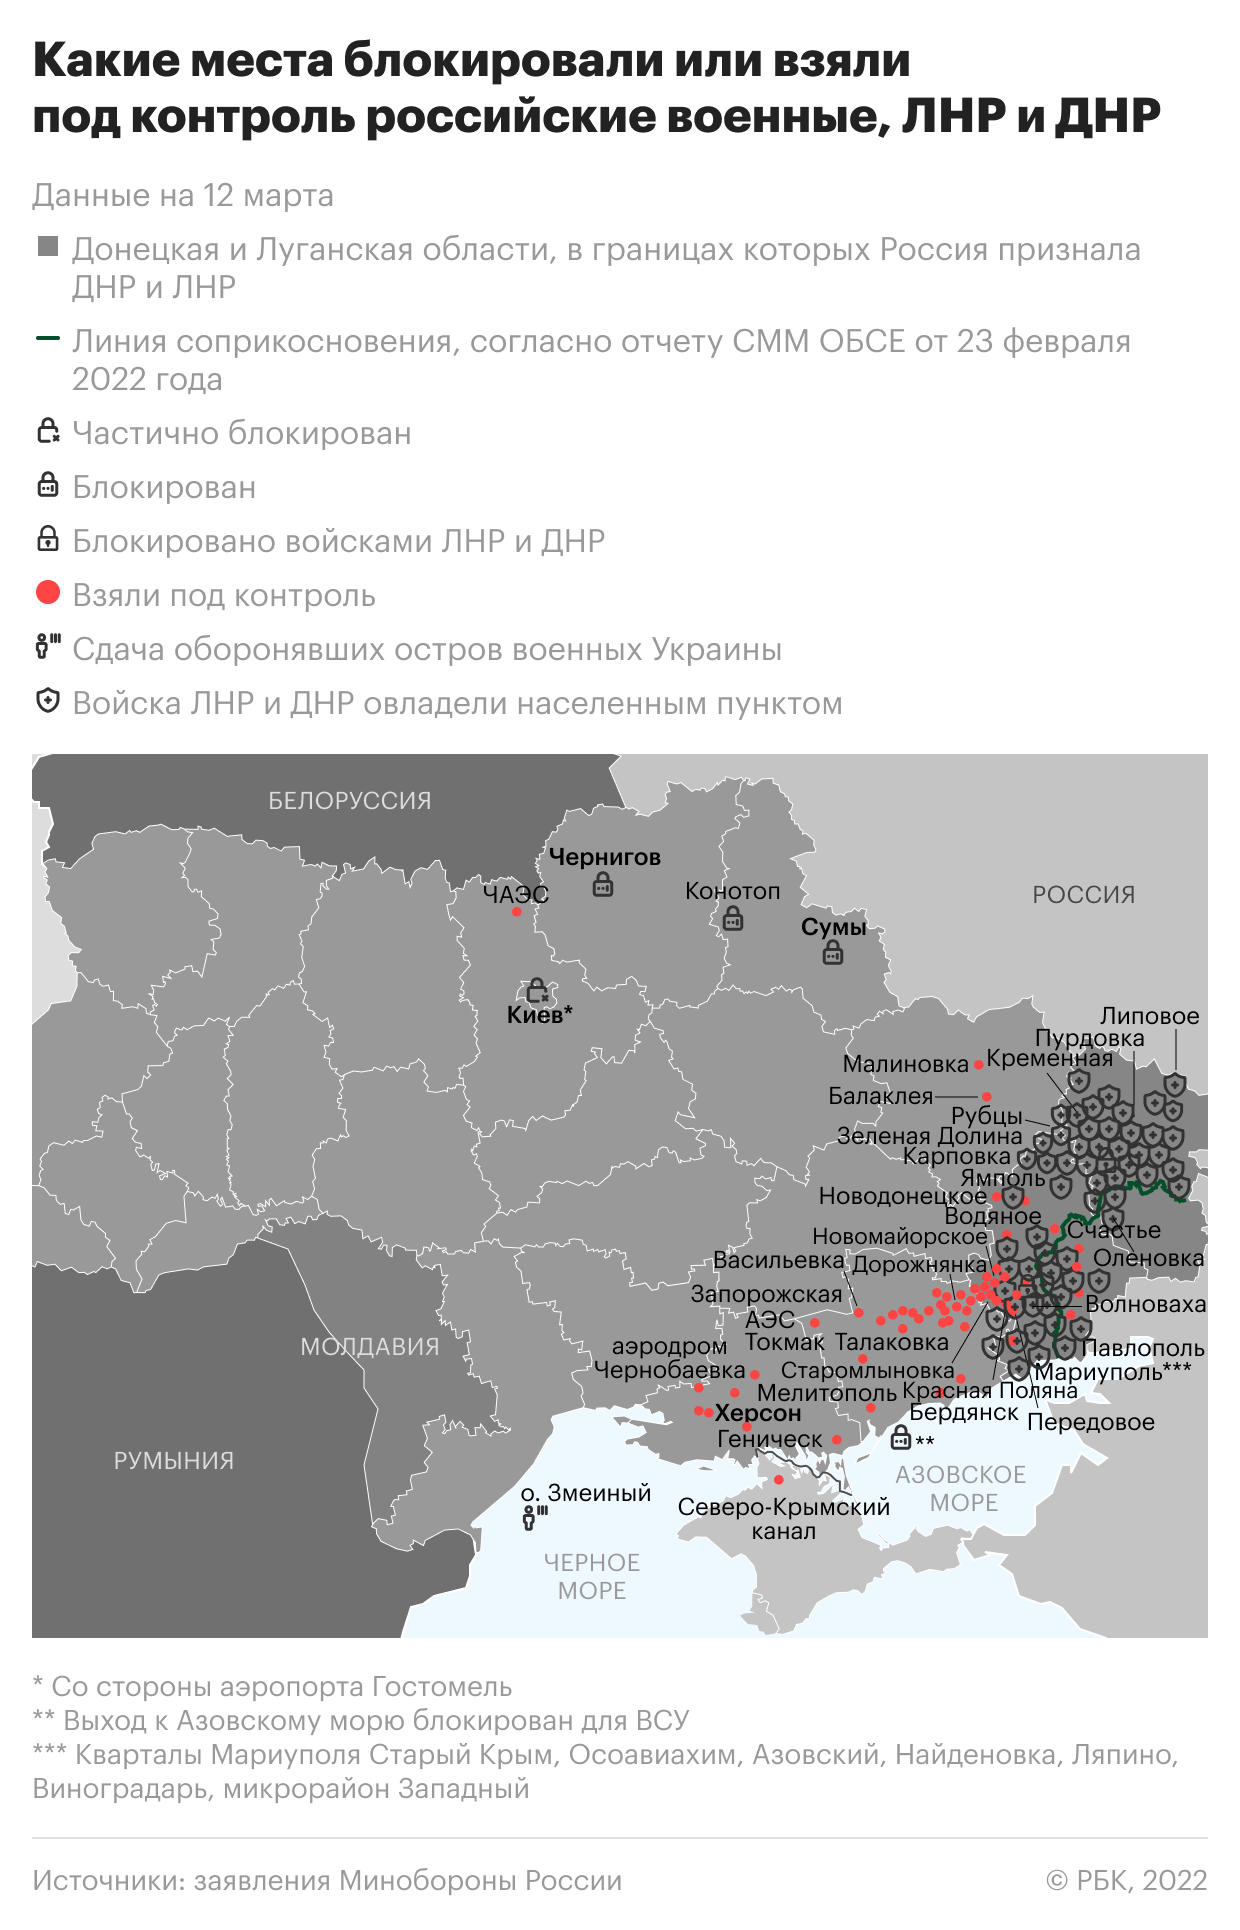 Минобороны сообщило об уничтожении 79 военных объектов Украины за сутки"/>













